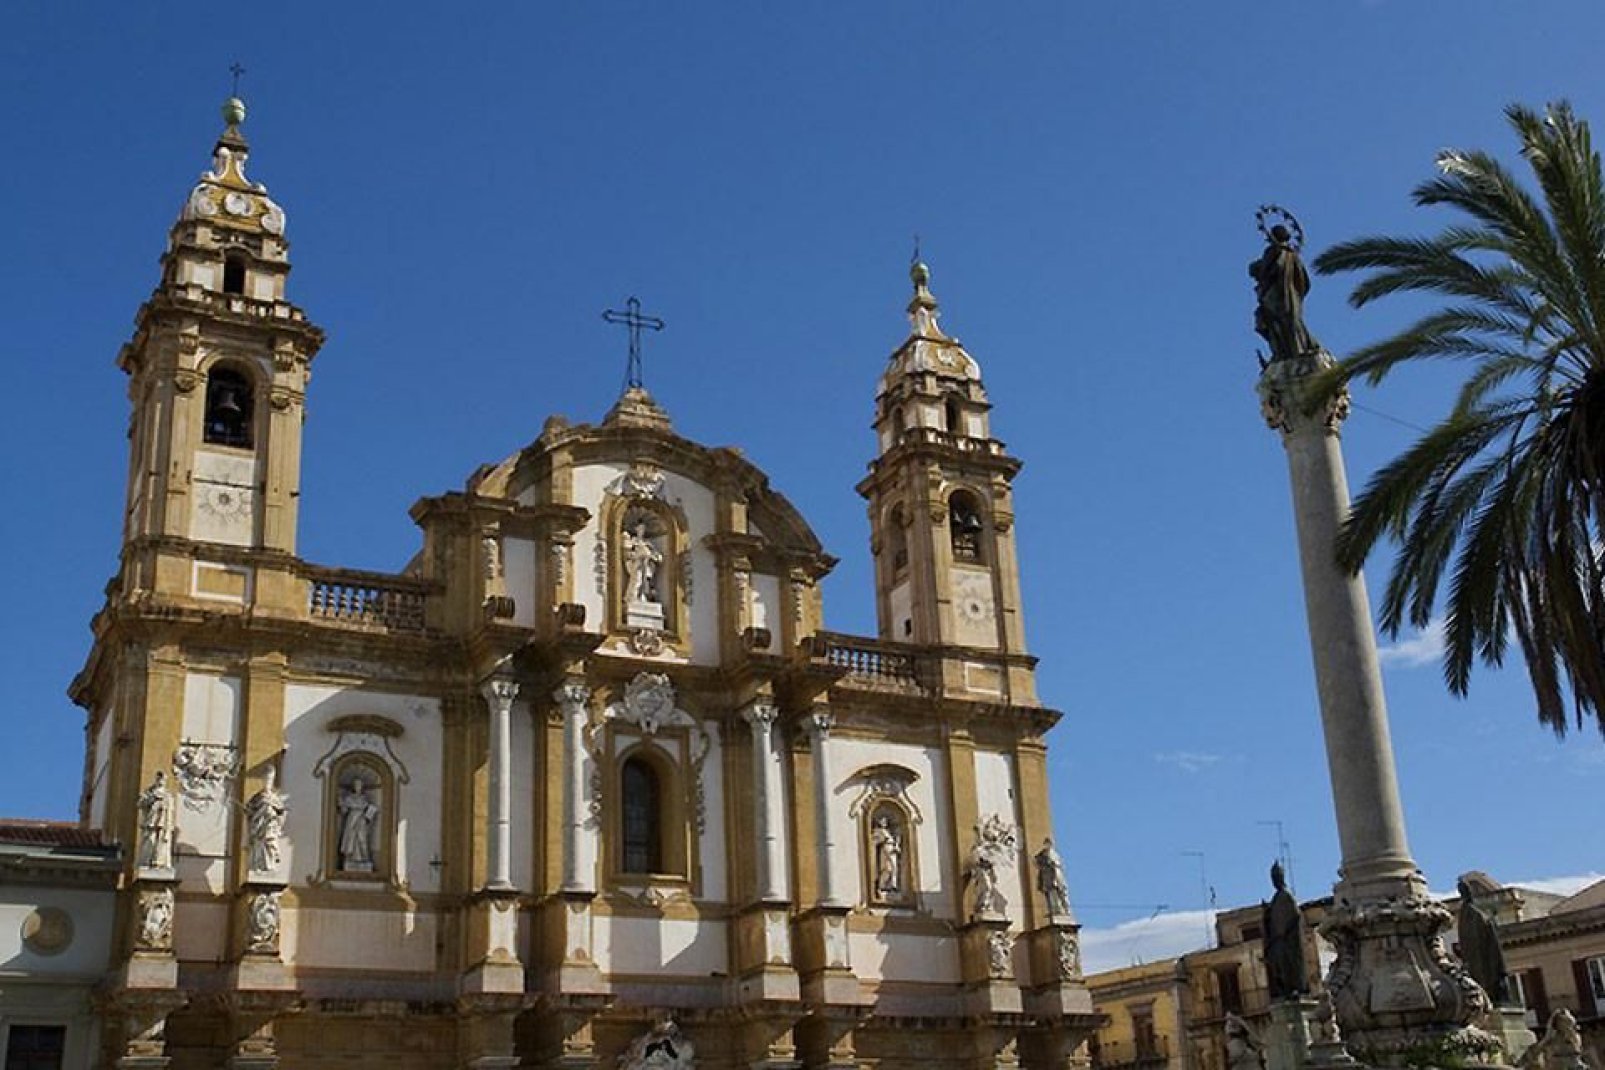 La chiesa di San Domenico è la seconda chiesa di Palermo per importanza dopo la Cattedrale e si trova nell'omonima piazza nel quartiere La Loggia.